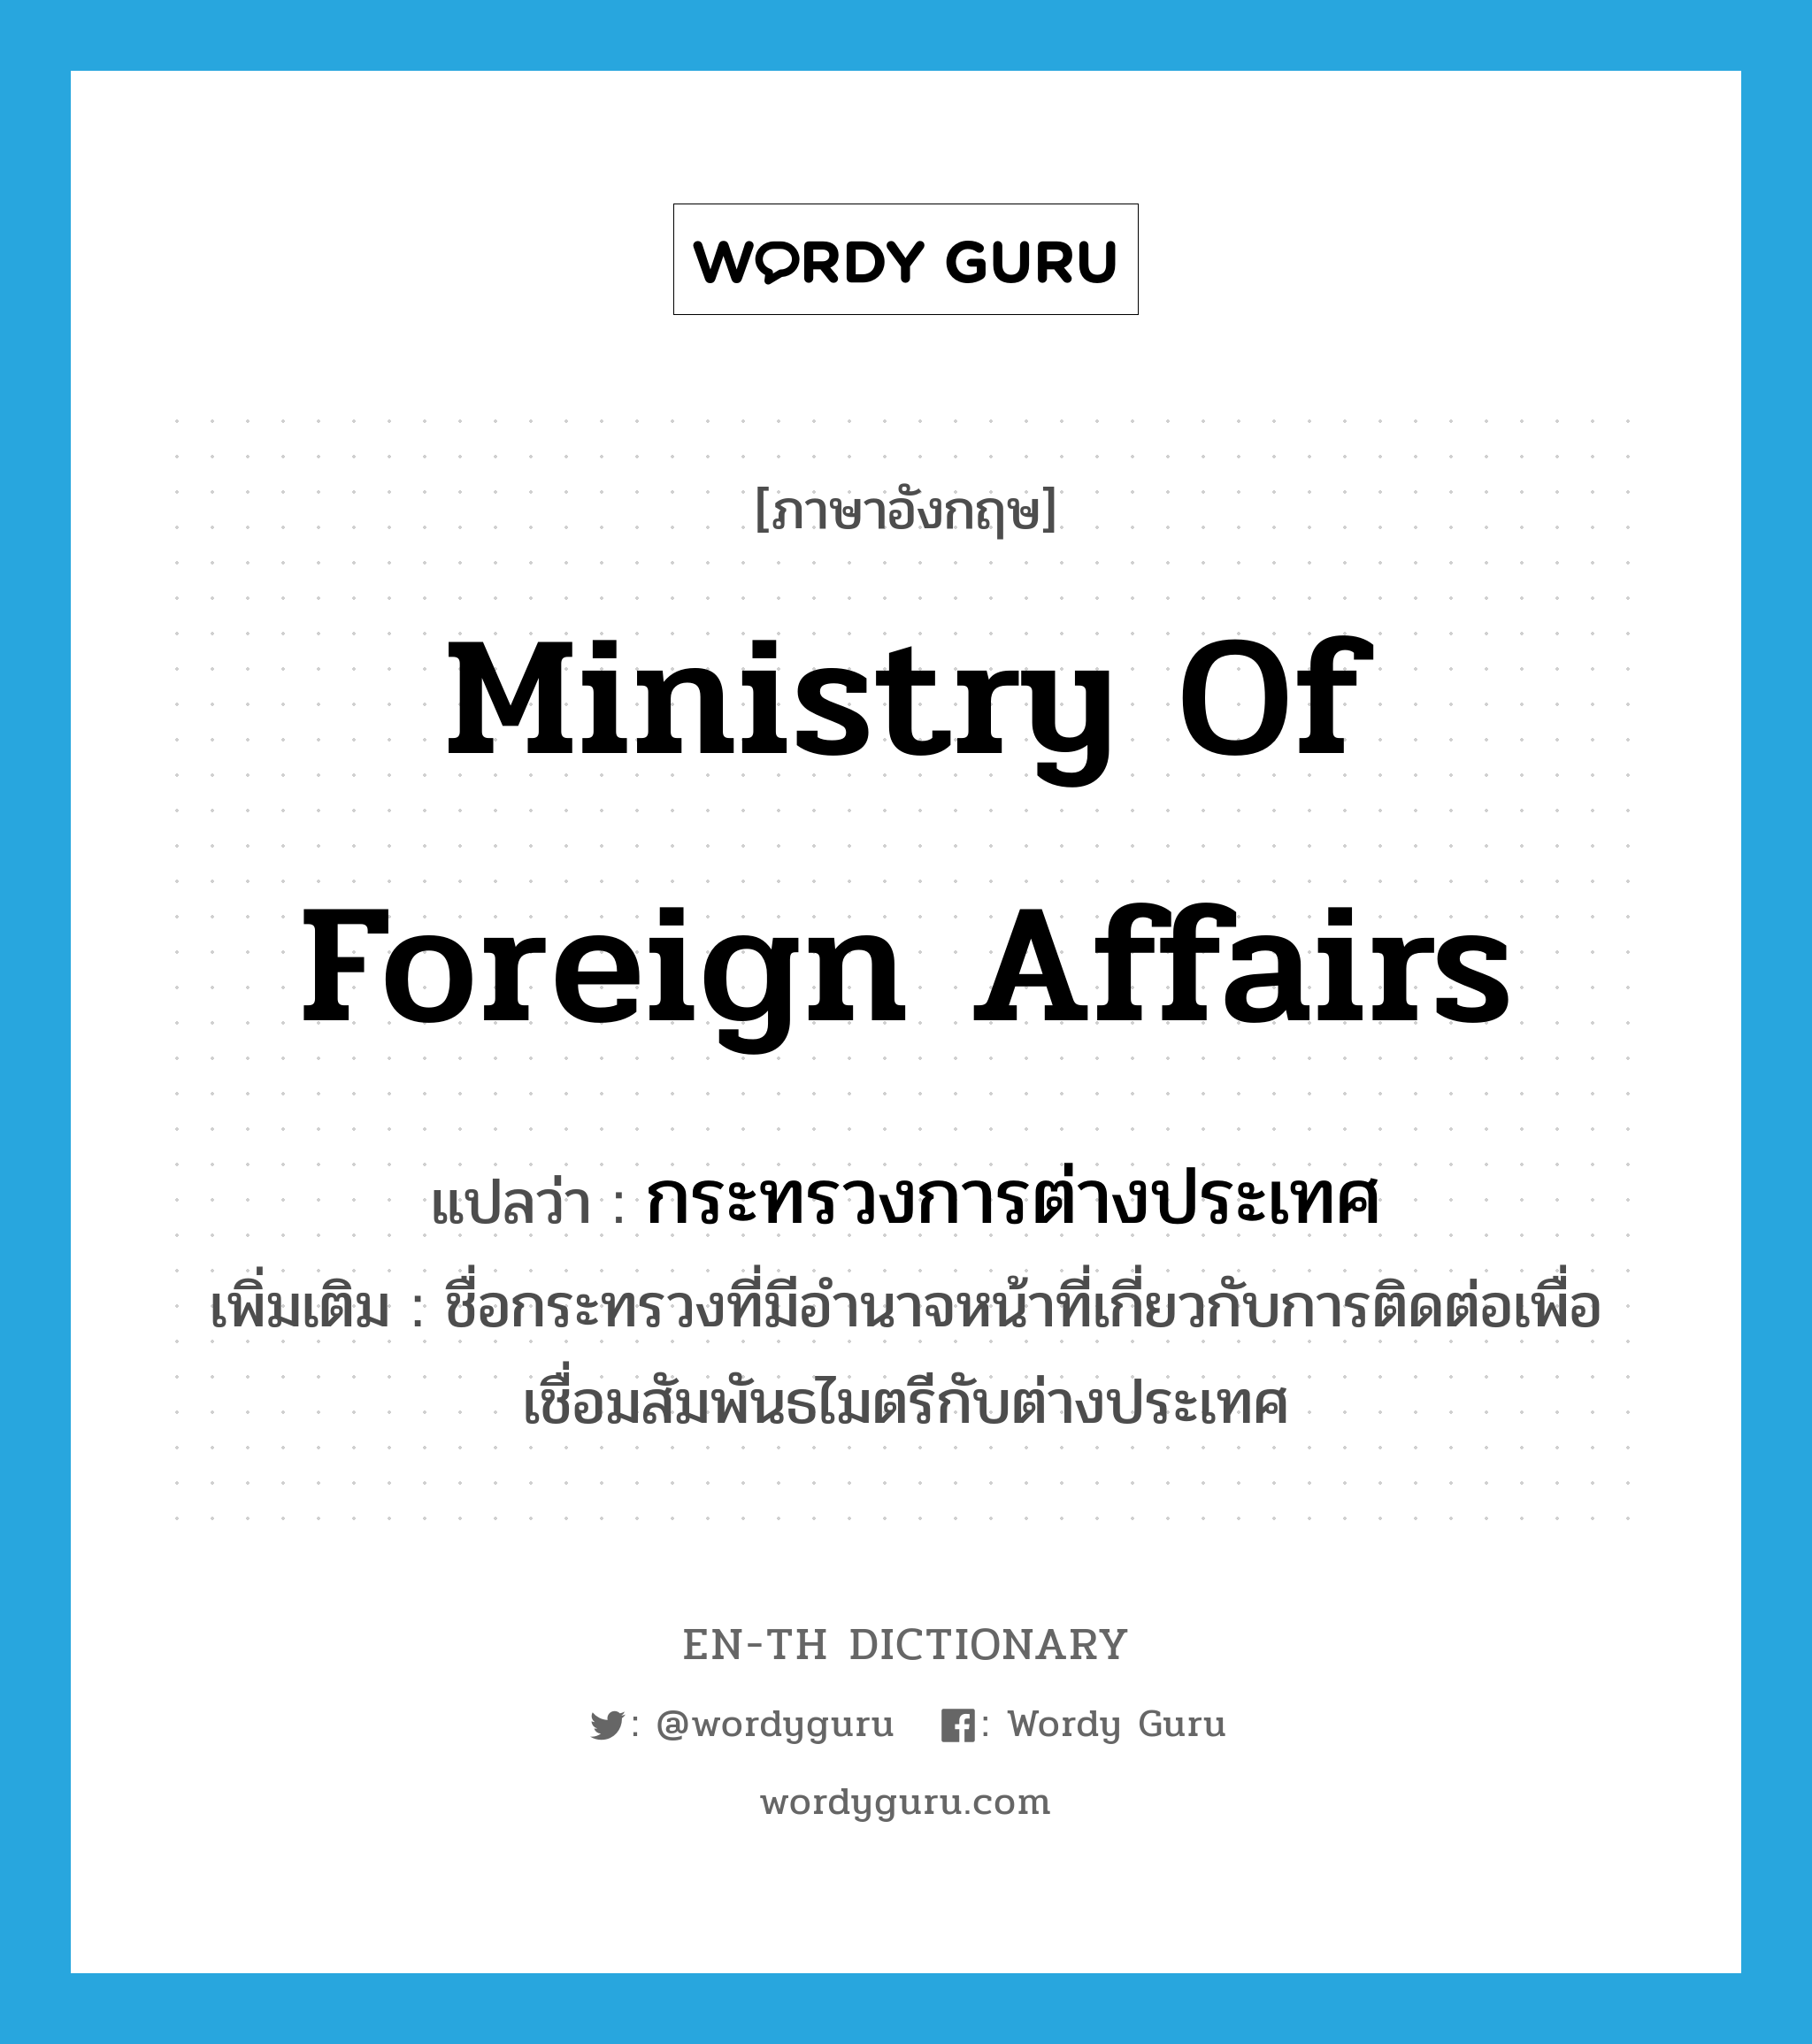 กระทรวงการต่างประเทศ ภาษาอังกฤษ?, คำศัพท์ภาษาอังกฤษ กระทรวงการต่างประเทศ แปลว่า Ministry of Foreign Affairs ประเภท N เพิ่มเติม ชื่อกระทรวงที่มีอำนาจหน้าที่เกี่ยวกับการติดต่อเพื่อเชื่อมสัมพันธไมตรีกับต่างประเทศ หมวด N